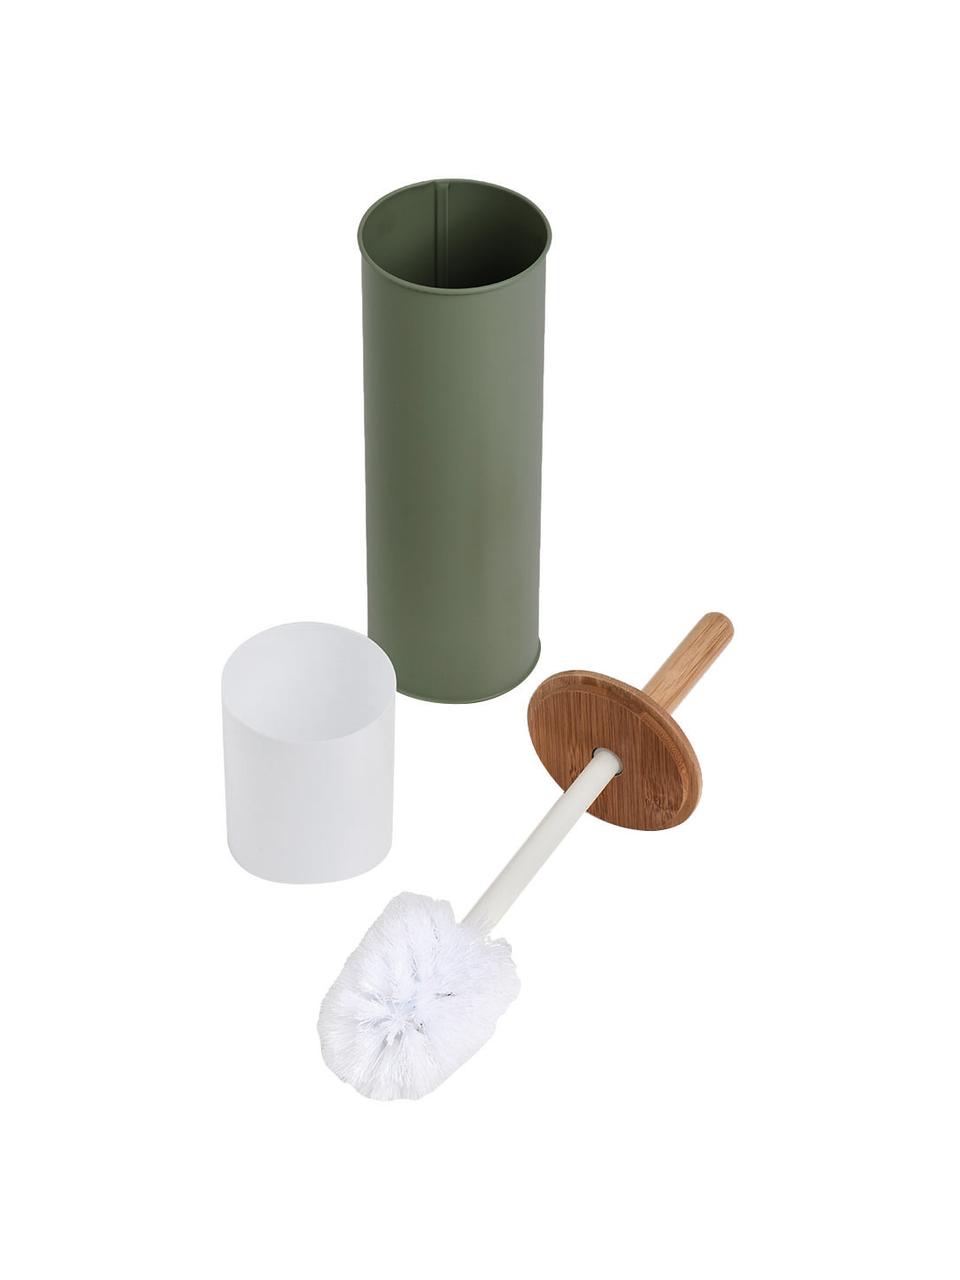 Toilettenbürste Tallin, Behälter: Metall, beschichtet, Deckel: Bambus, Grün, Ø 10 x H 38 cm